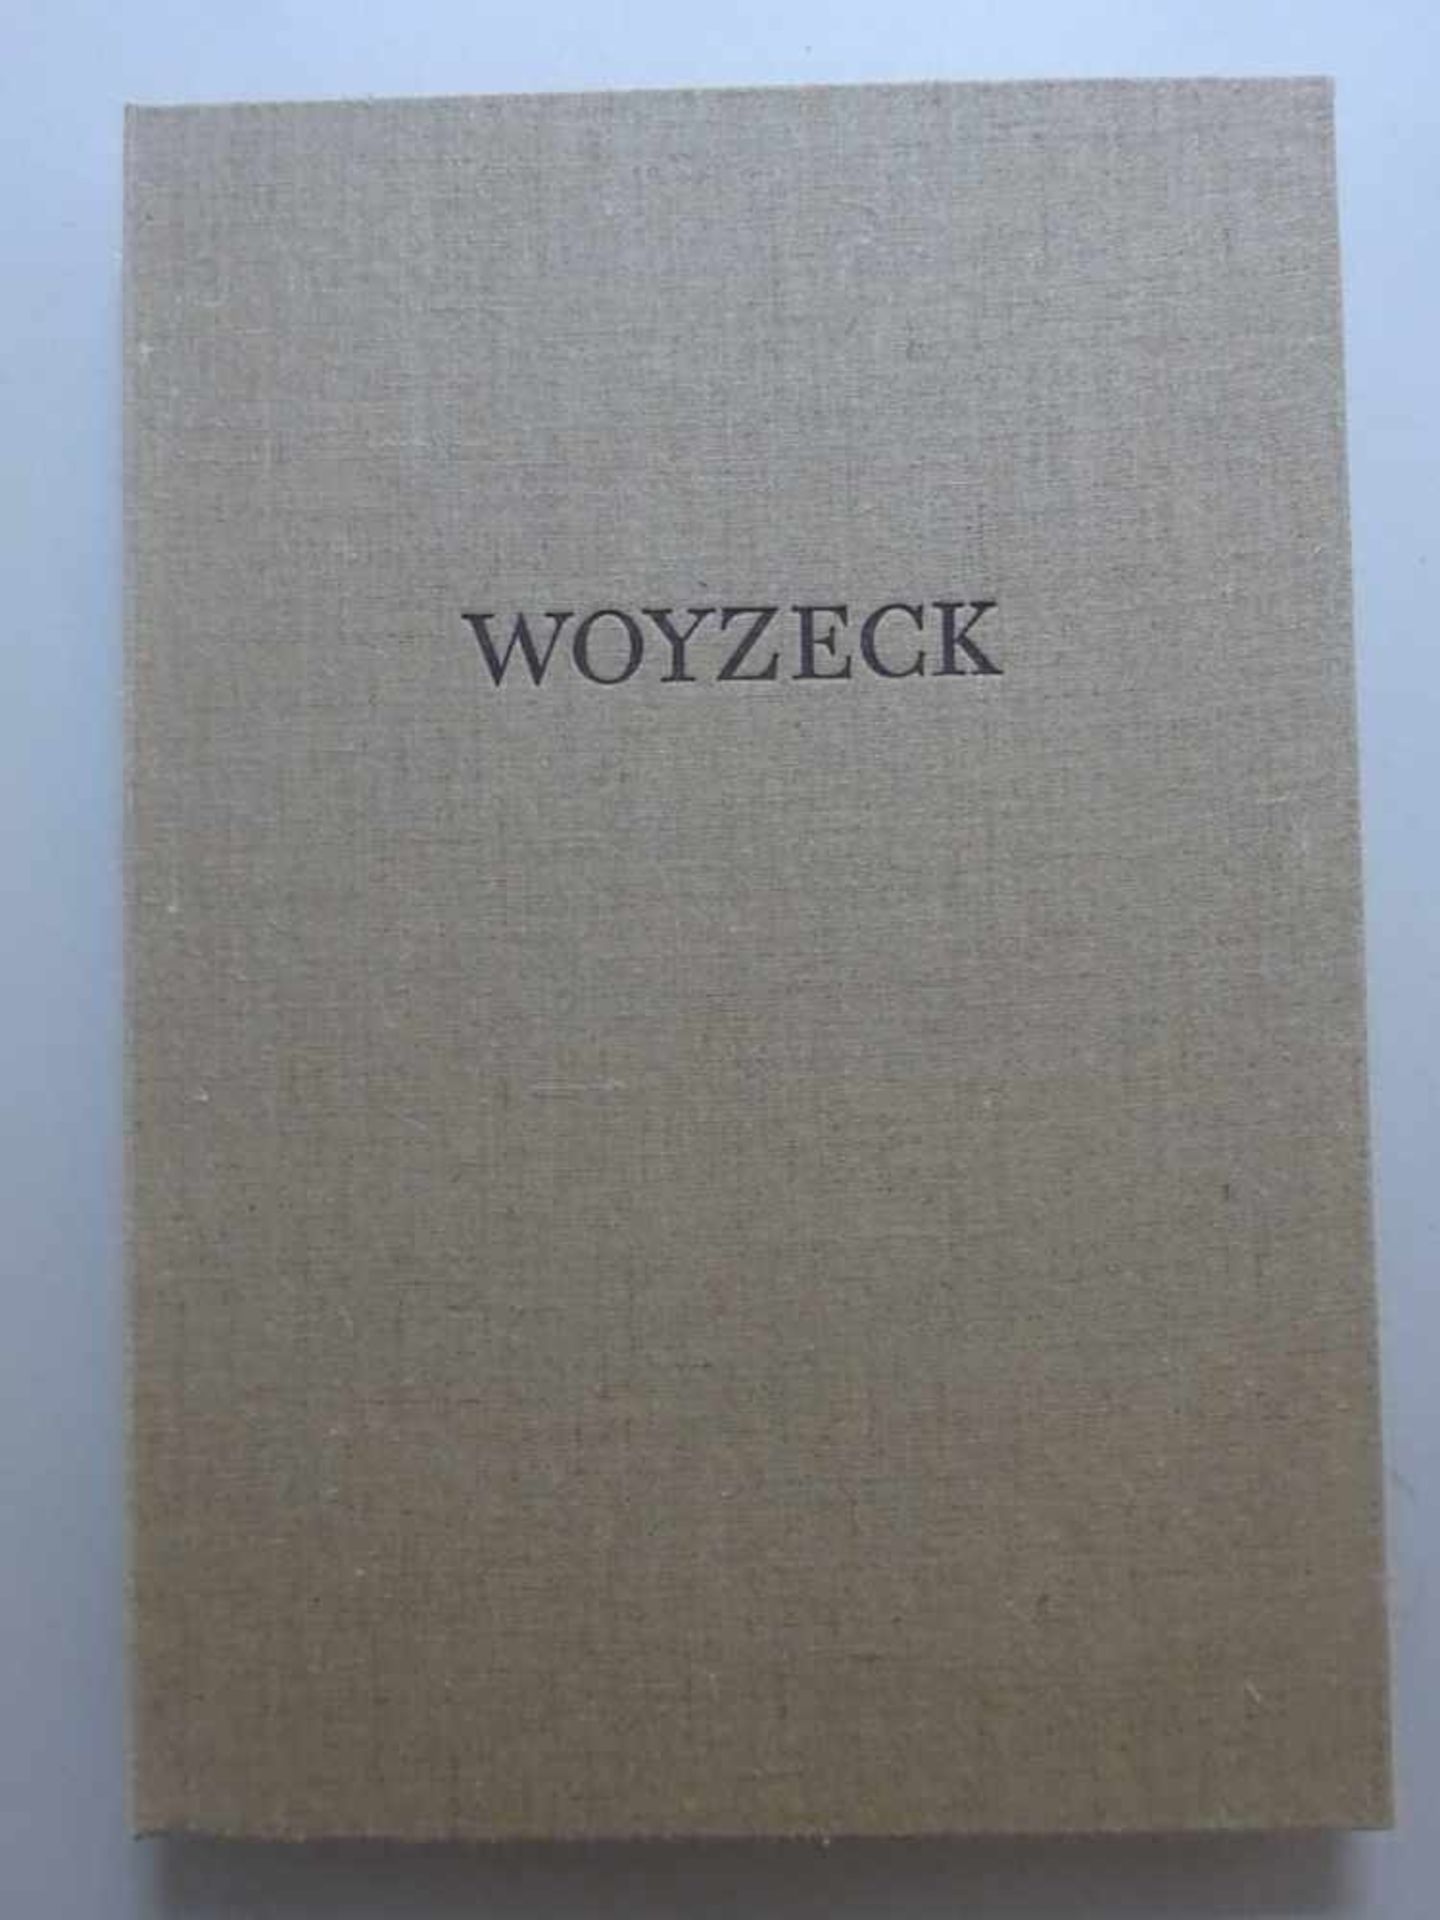 Pressendrucke.- Büchner, G.Woyzeck. Illustriert von Jarmila Maranová. Stuttgart, Müller u. - Bild 7 aus 7